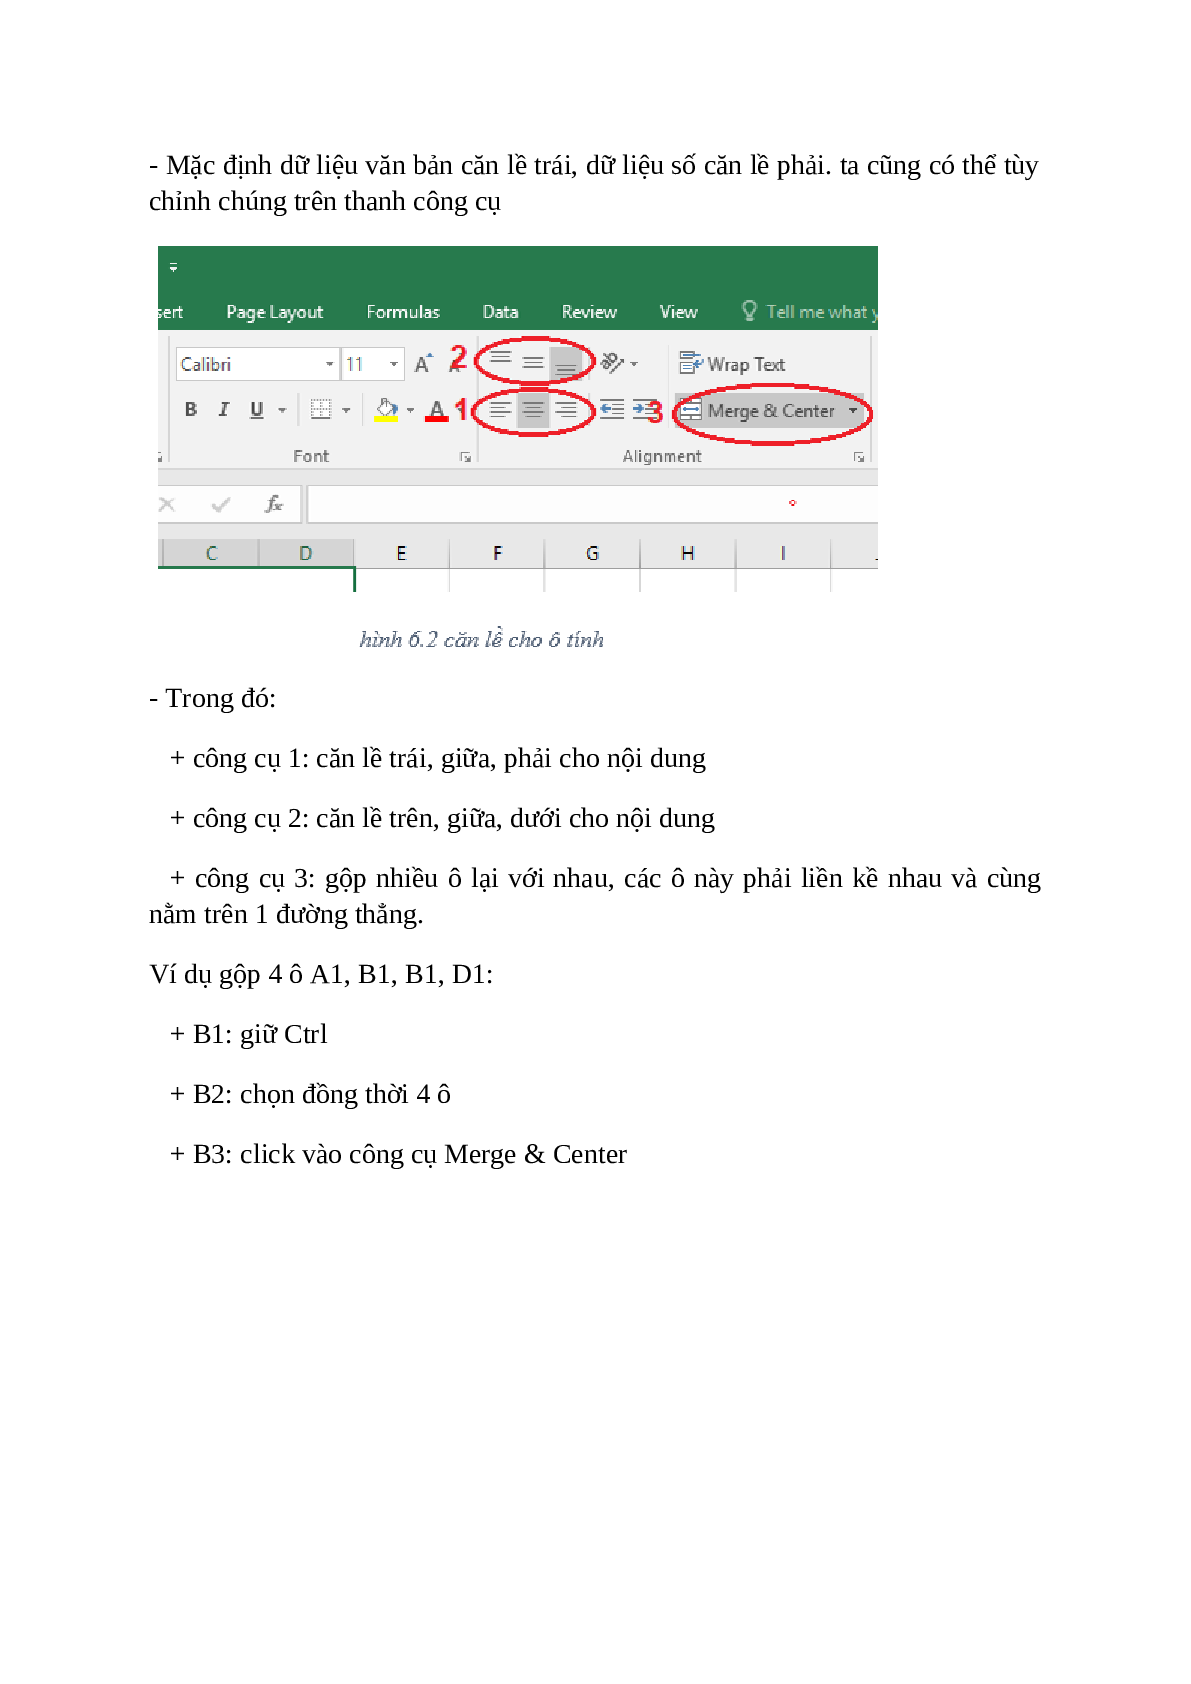 Tin học 7 Định dạng trang tính: Khóa học Tin học 7 Định dạng trang tính sẽ giúp bạn trở thành chuyên gia của Excel. Từ cách sử dụng các công cụ định dạng để tạo ra bảng tính đẹp mắt, đến cách tối ưu hóa các thao tác trong Excel, khóa học này sẽ giúp bạn trở thành một người dùng kỳ cựu của Excel.